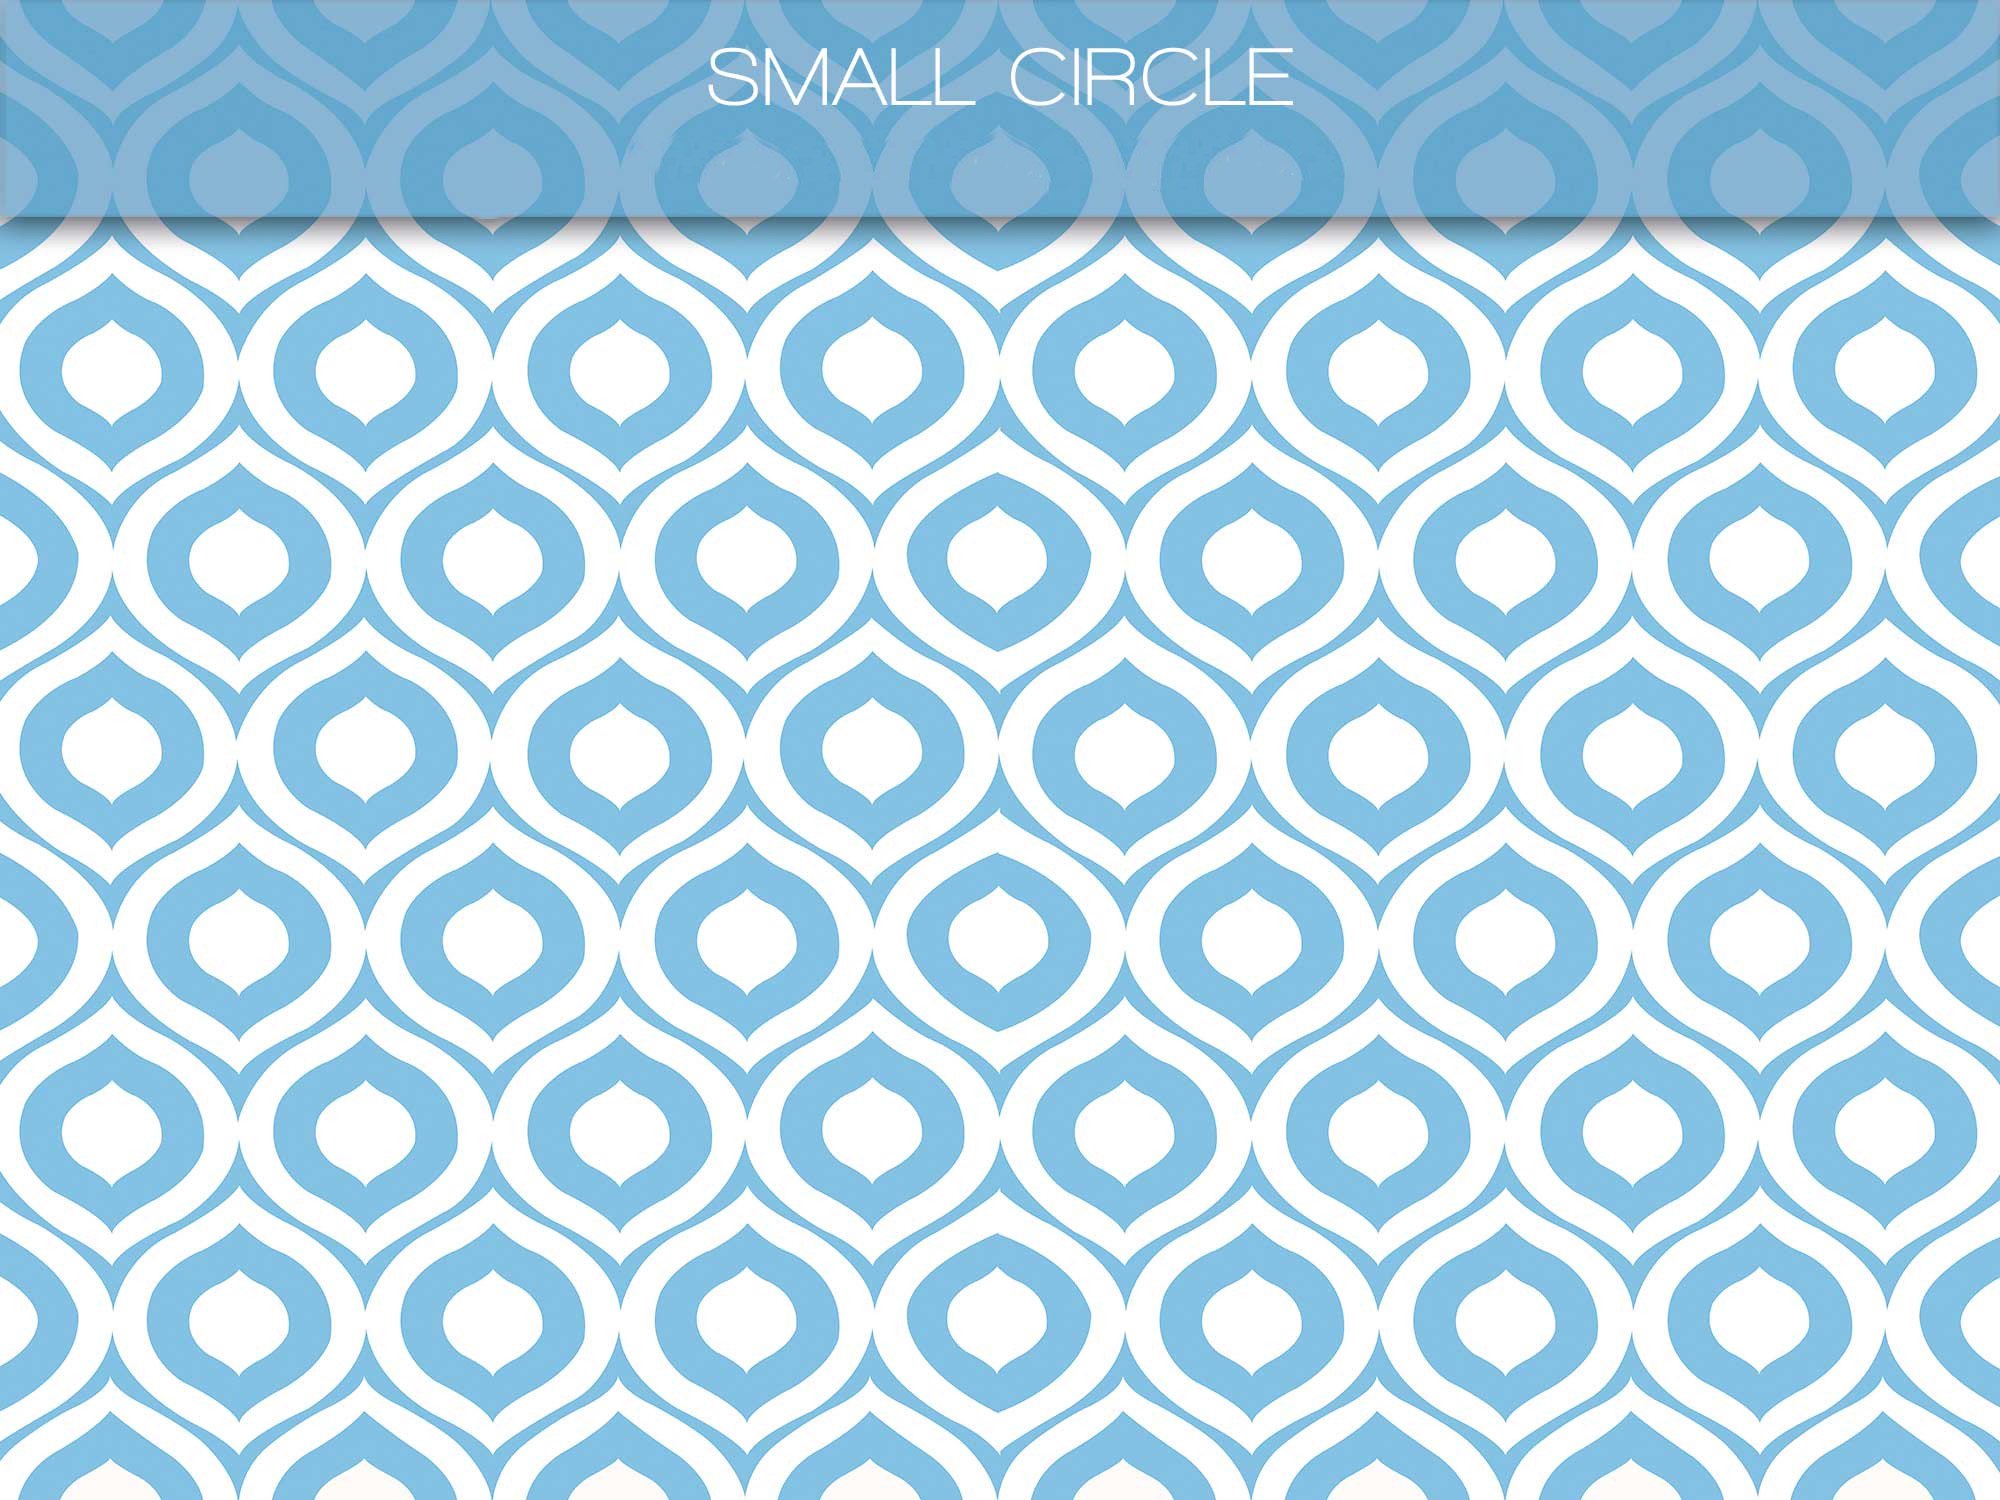 25 Small-circle